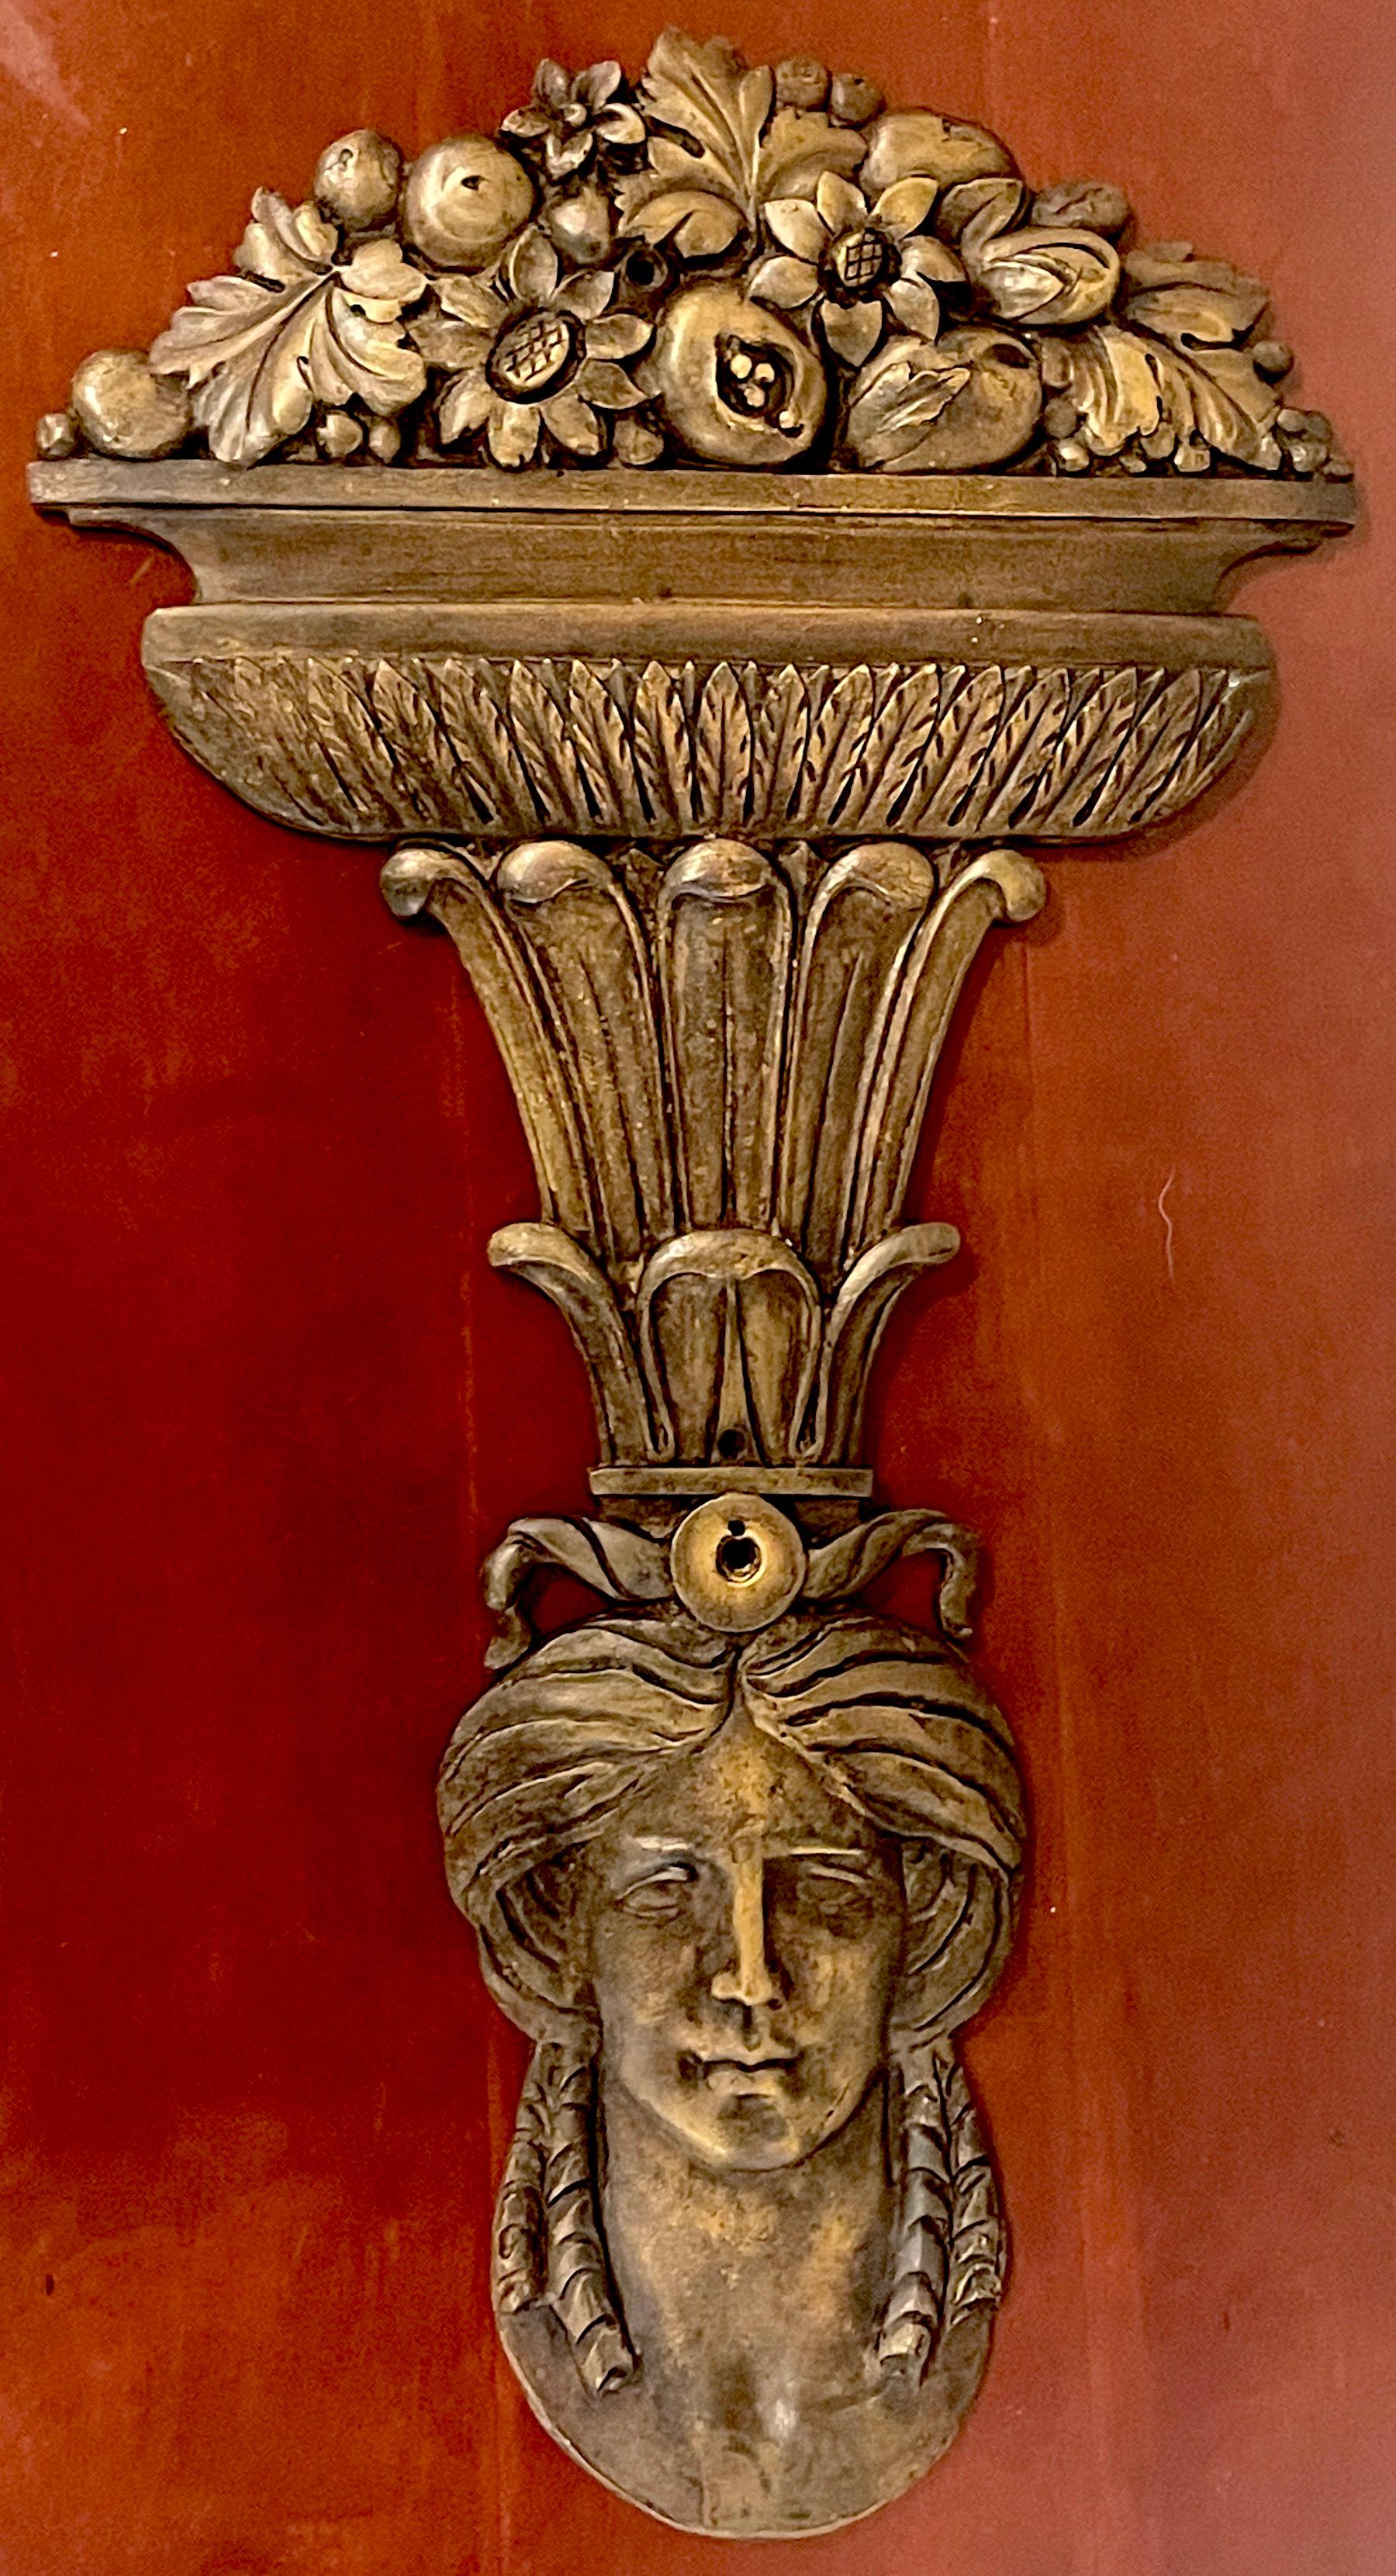 Grand élément architectural figuré en bronze de style romain, représentant une déesse tenant sur sa tête une colonne d'acanthe avec une urne en bronze cascadant avec des fleurs, des fruits et des feuilles. 
Percé de trois trous de fixation au